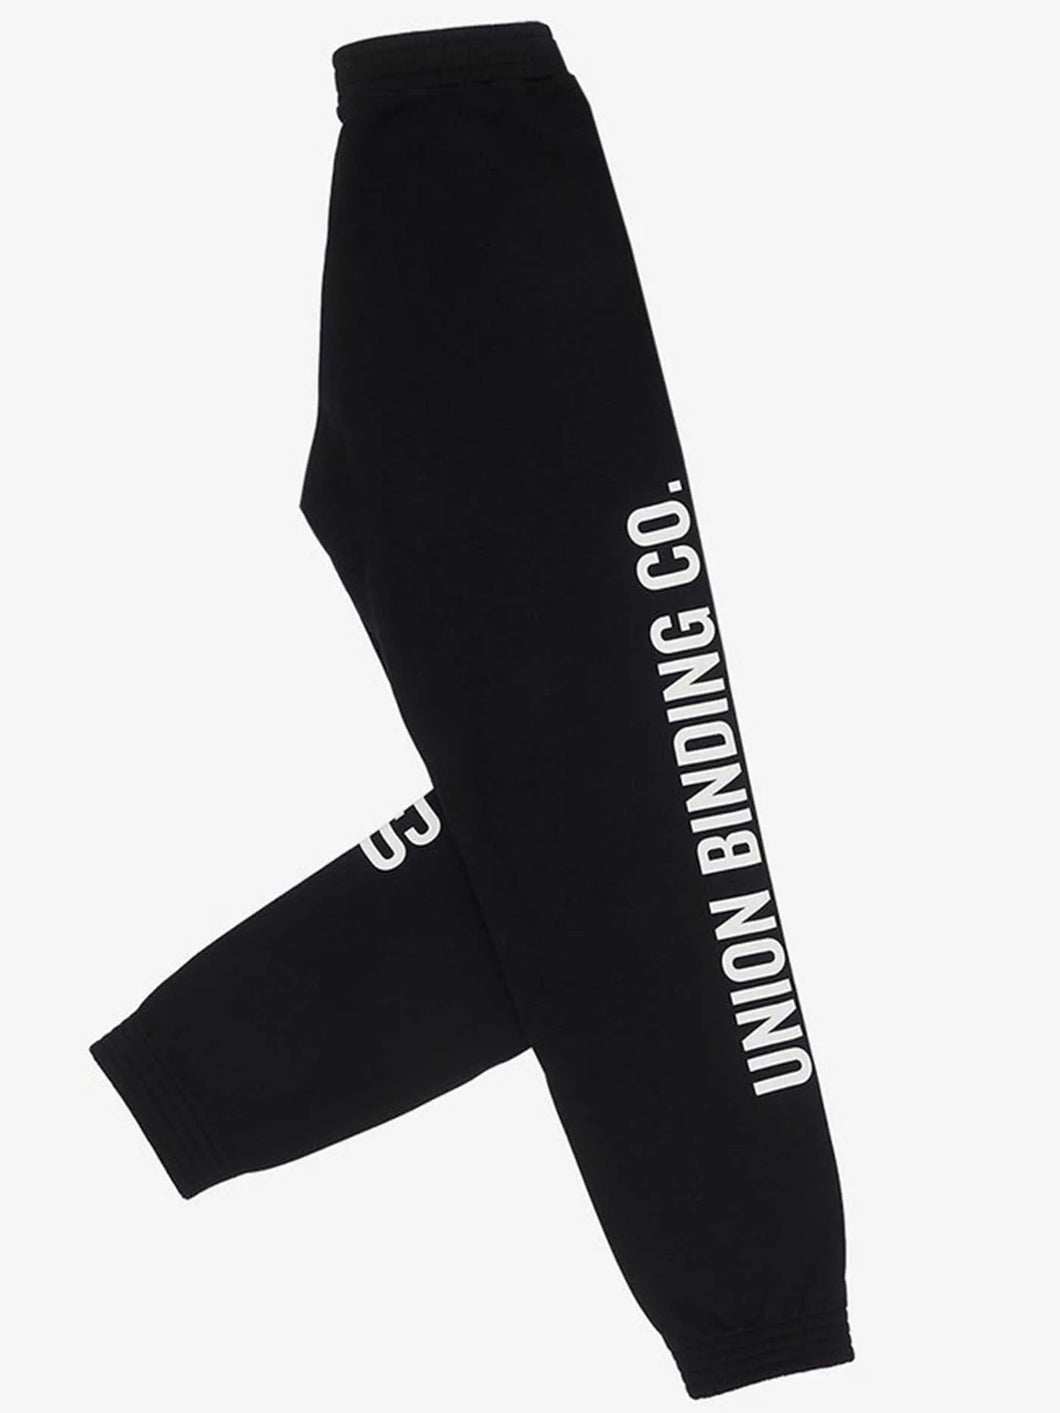 Union Sweatsuit - Swetpants Black